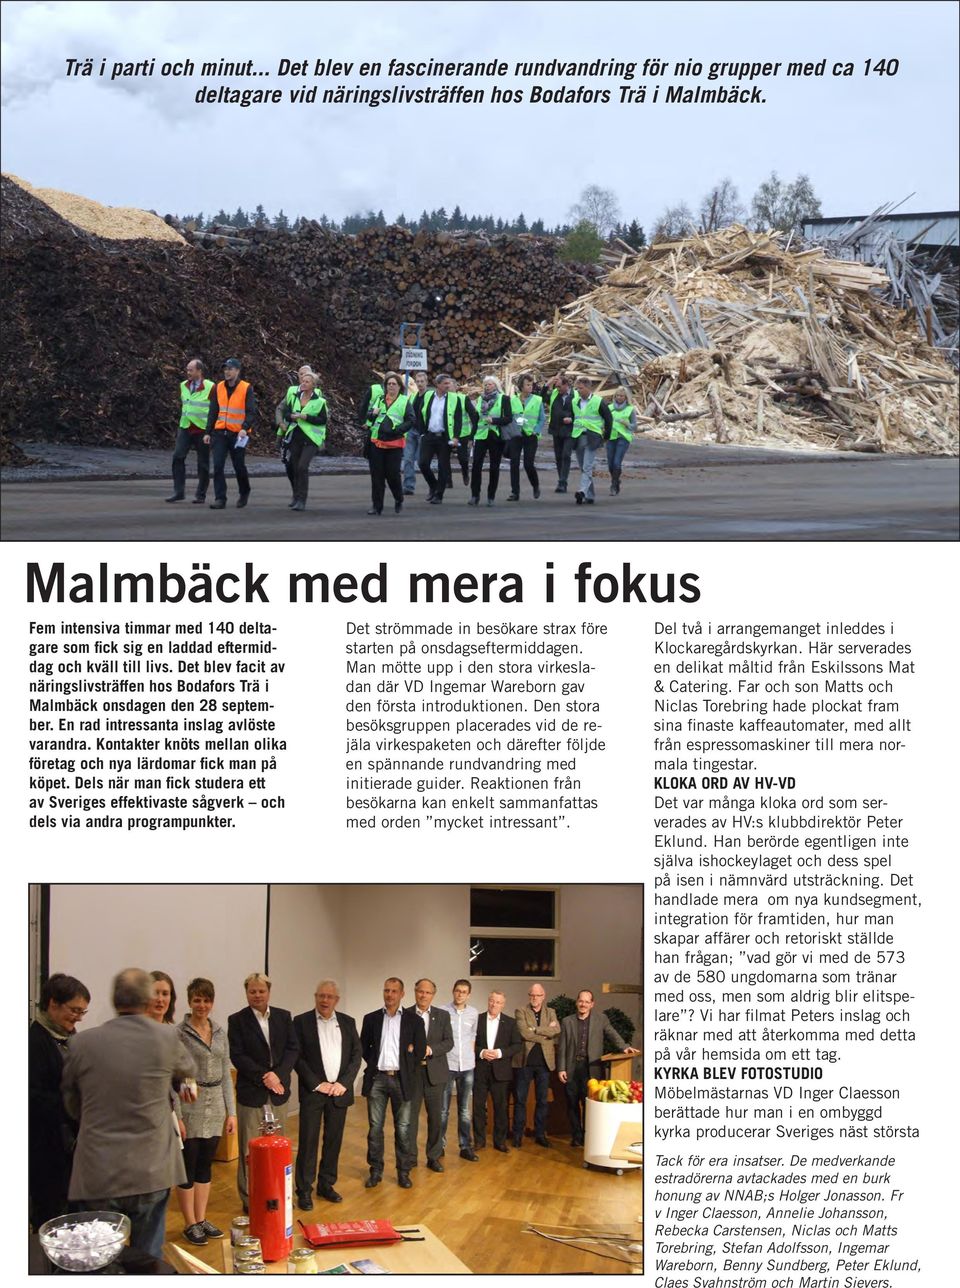 Det blev facit av näringslivsträffen hos Bodafors Trä i Malmbäck onsdagen den 28 september. En rad intressanta inslag avlöste varandra.